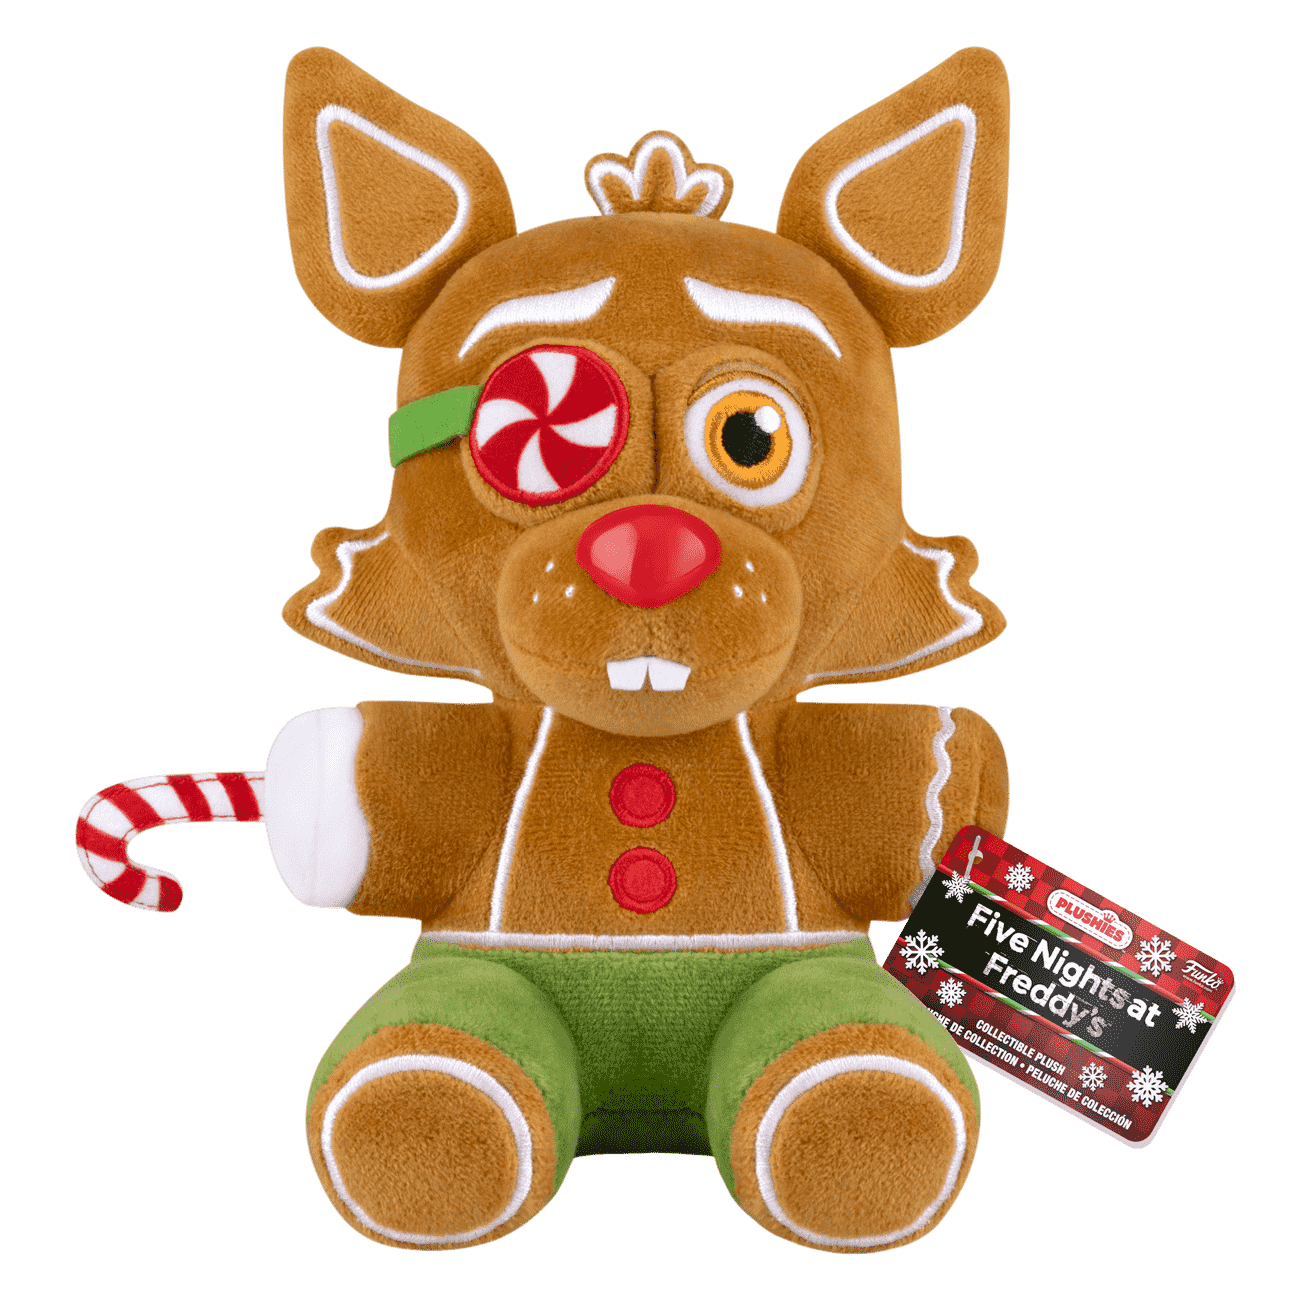 Buy Gingerbread Foxy Plush at Funko.